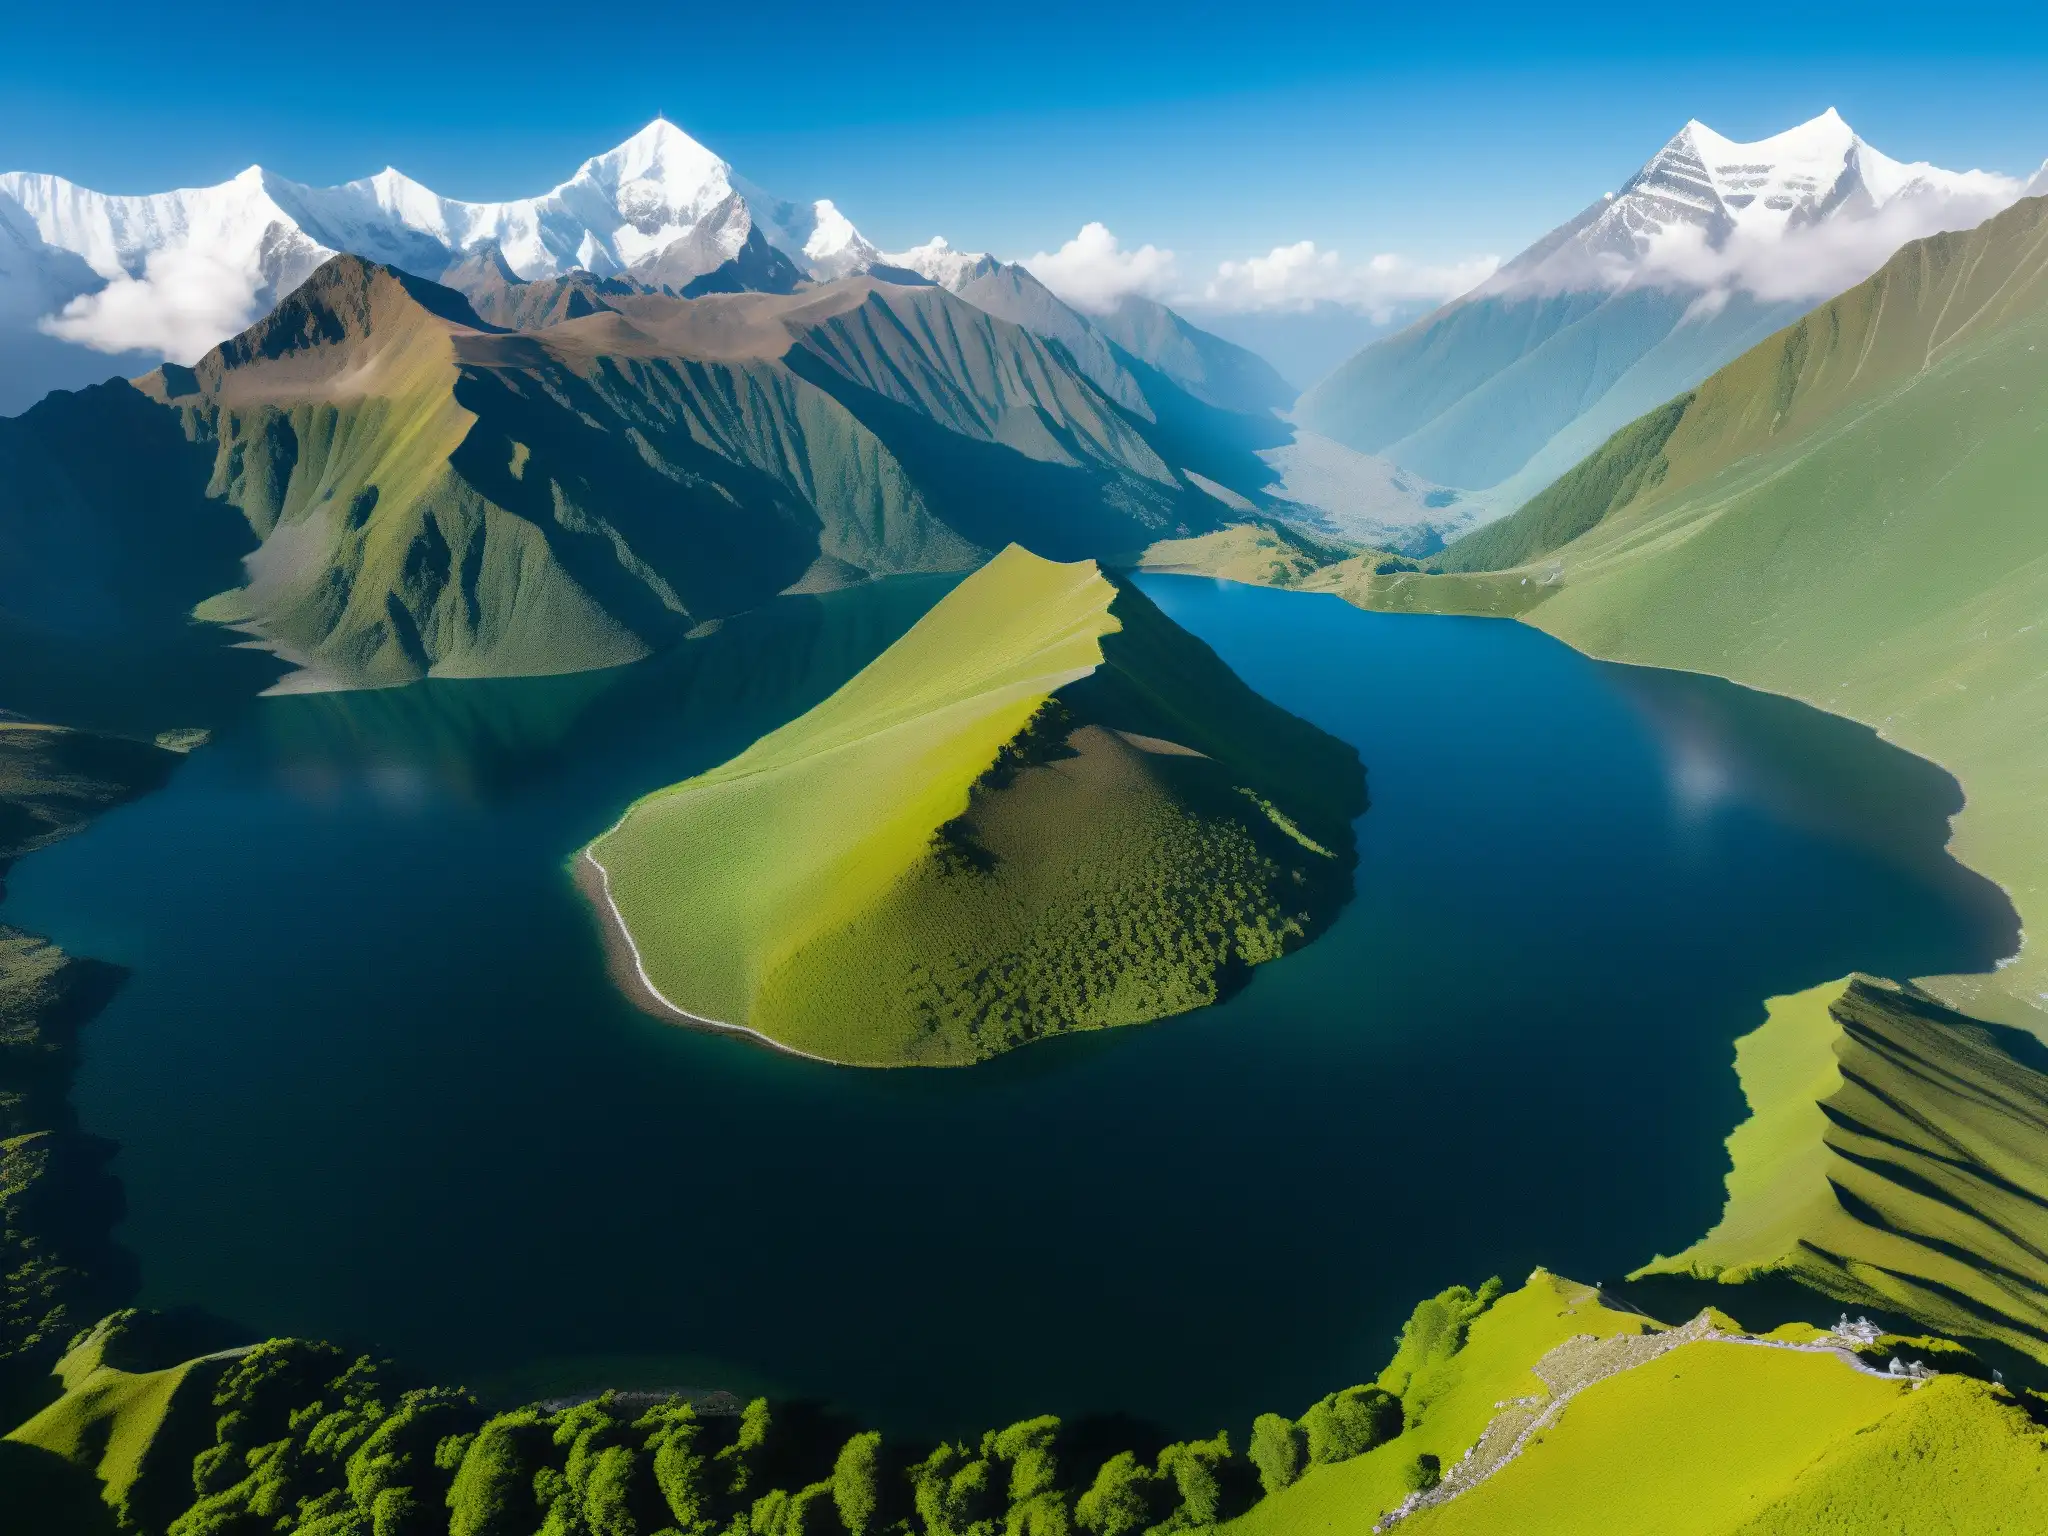 Vista aérea de Roopkund Lake en el Himalaya, con misterio ancestral y naturaleza hechizante